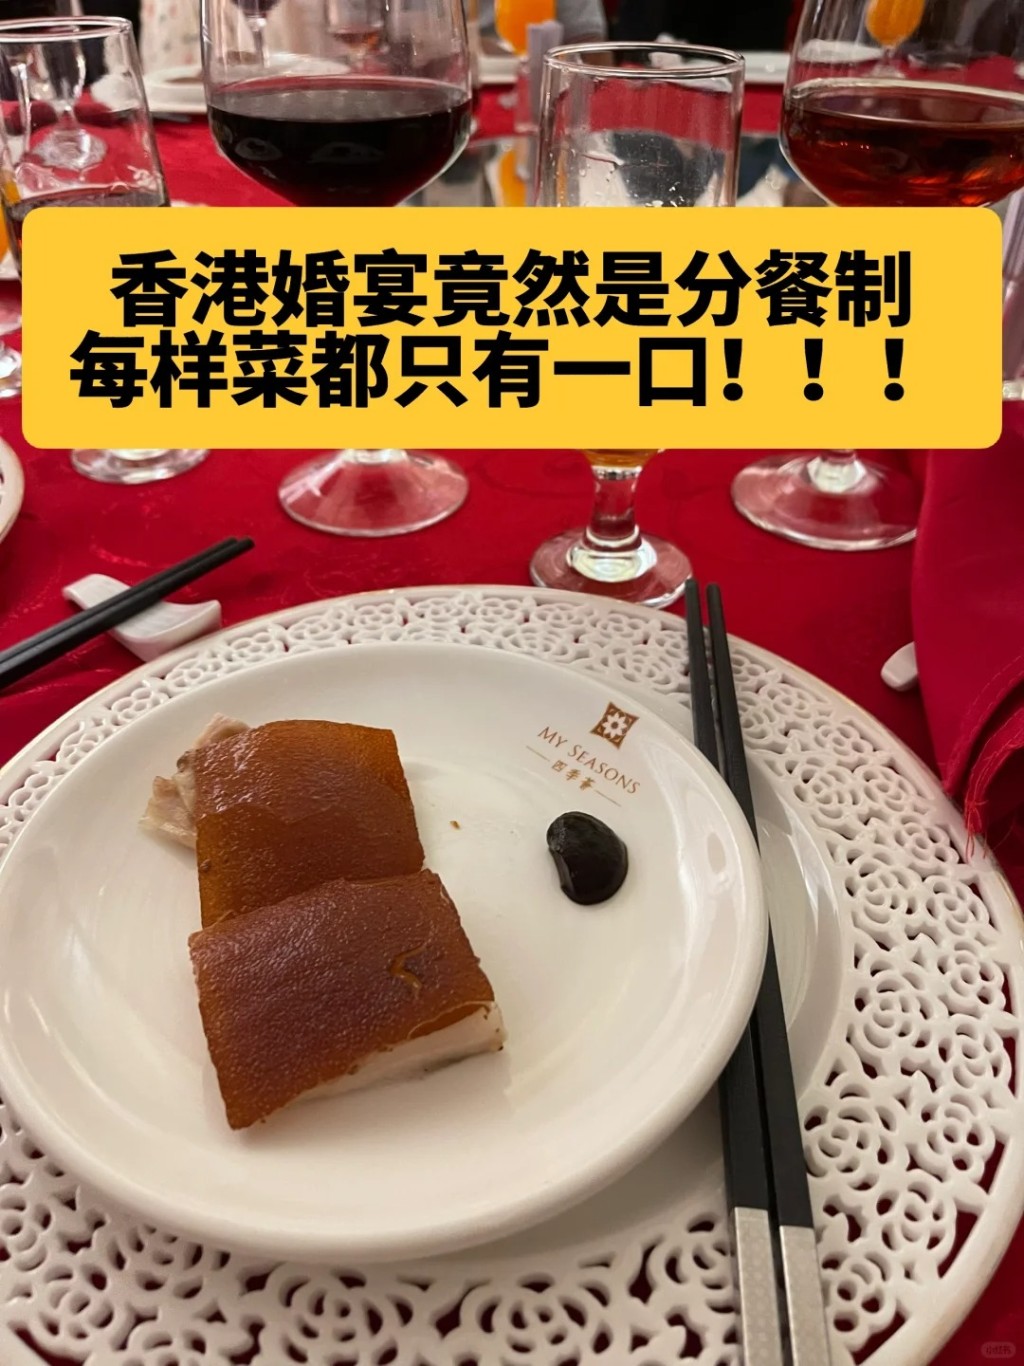 這位網民在小紅書上發文分享參加香港婚宴的經歷，形容「分餐制」下「每樣菜都只有一小口」